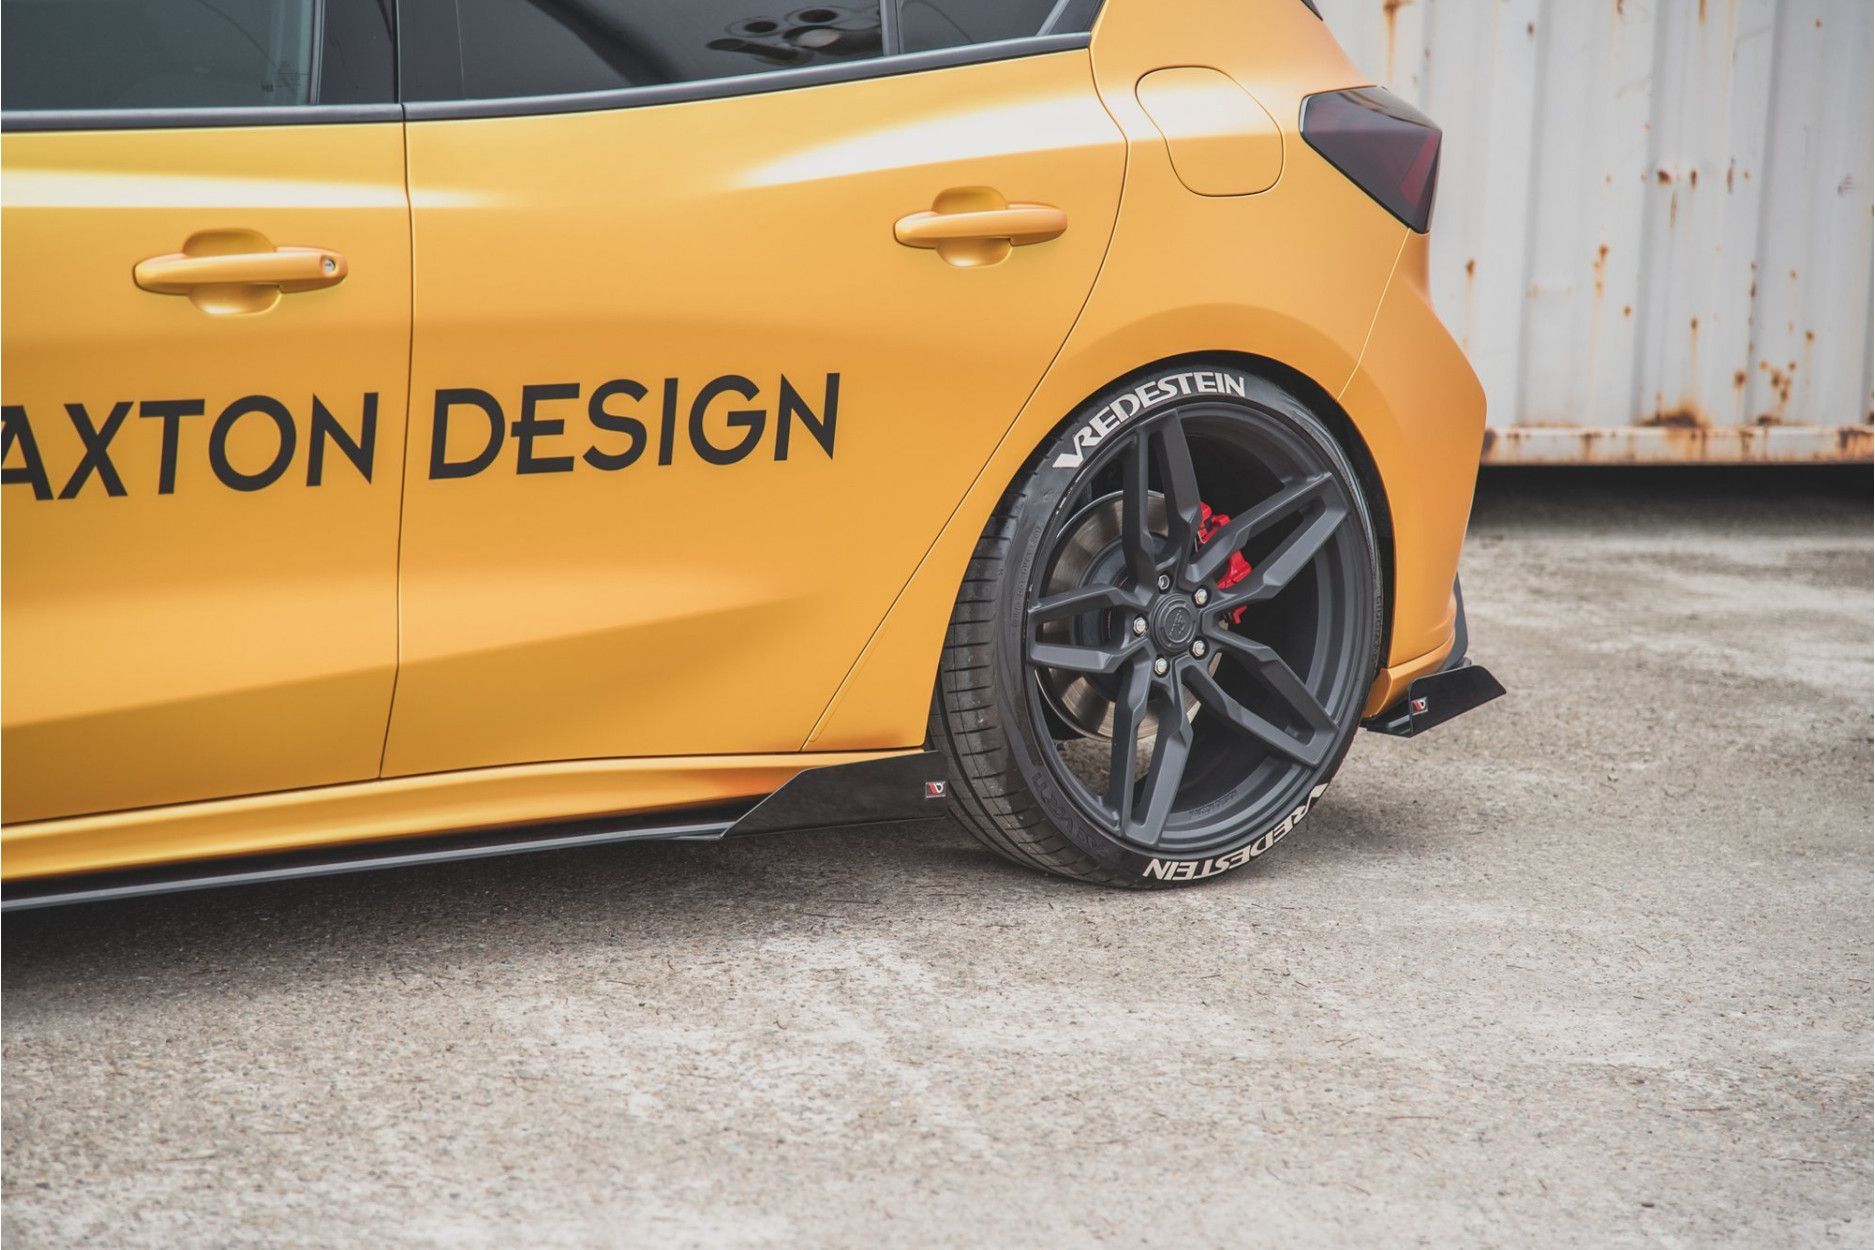 Maxtondesign Seitenschweller für Ford Focus MK4 STST-Line Racing schwarz  hochglanz - online kaufen bei CFD